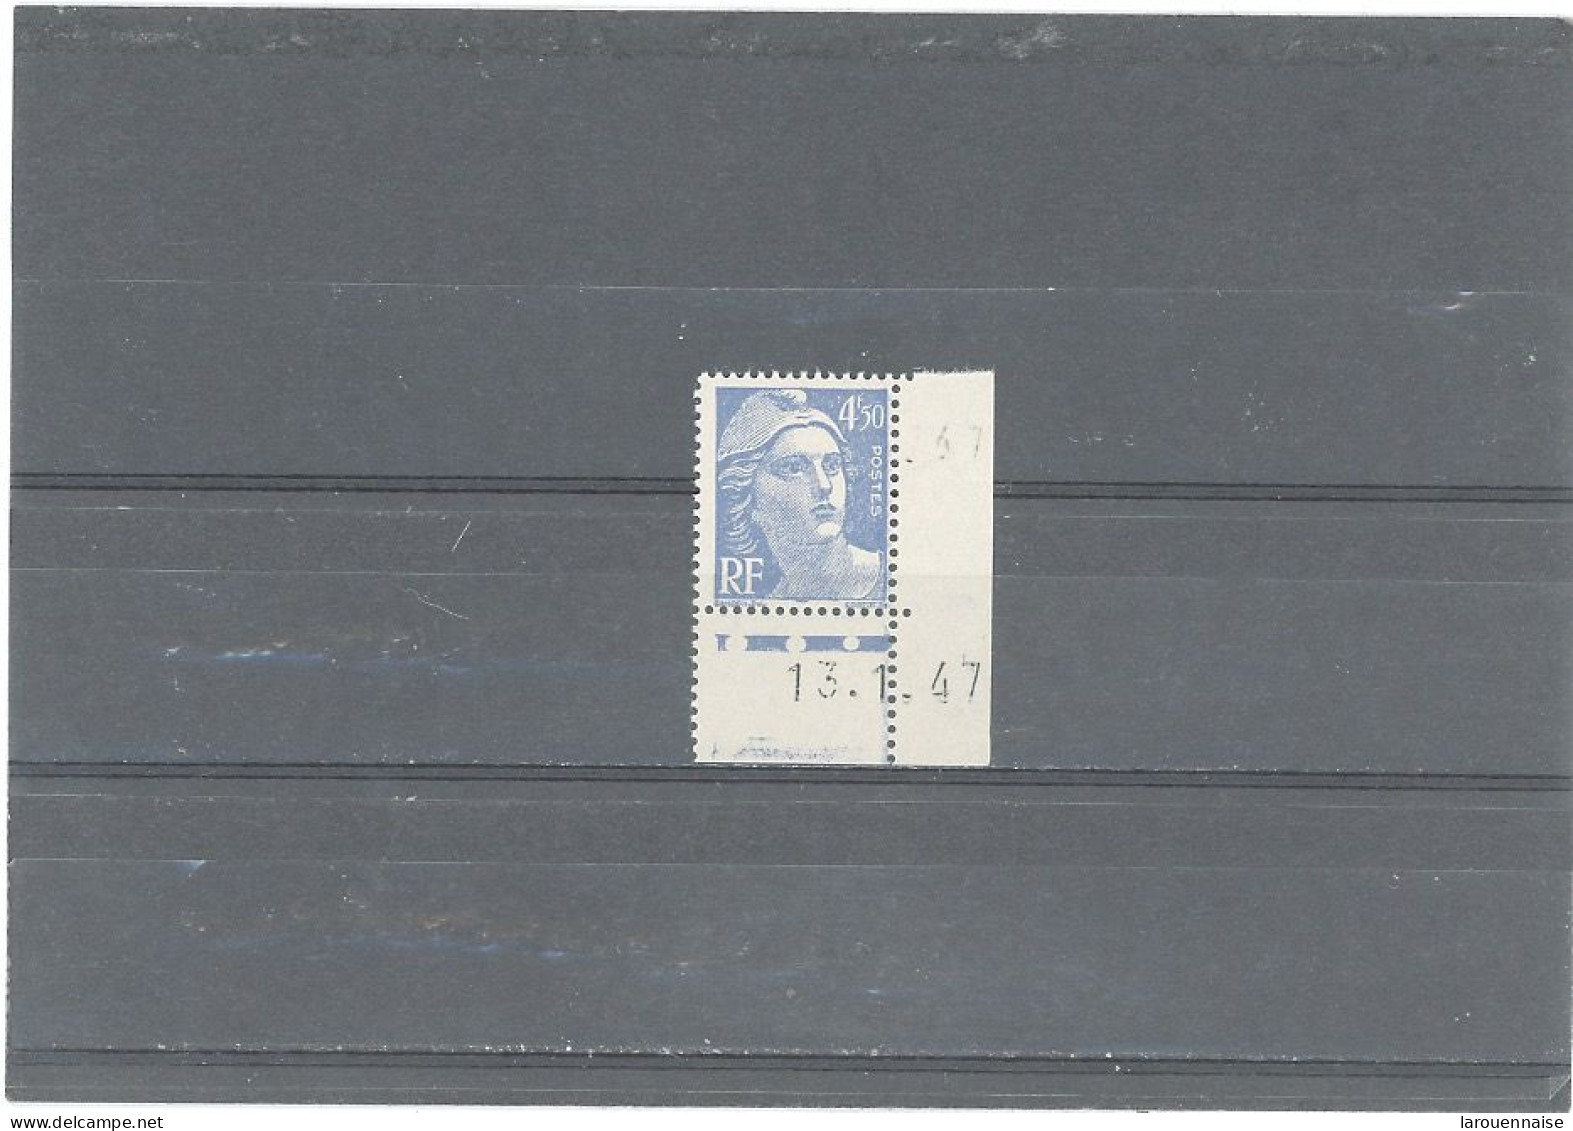 VARIÉTÉS -N°718A -MARIANNE DE GANDON -4,50F BLEU -COIN DE FEUILLE DATÉ 13-1-47 -OVAL BLANC -A DROITE DU MENTON - Unused Stamps